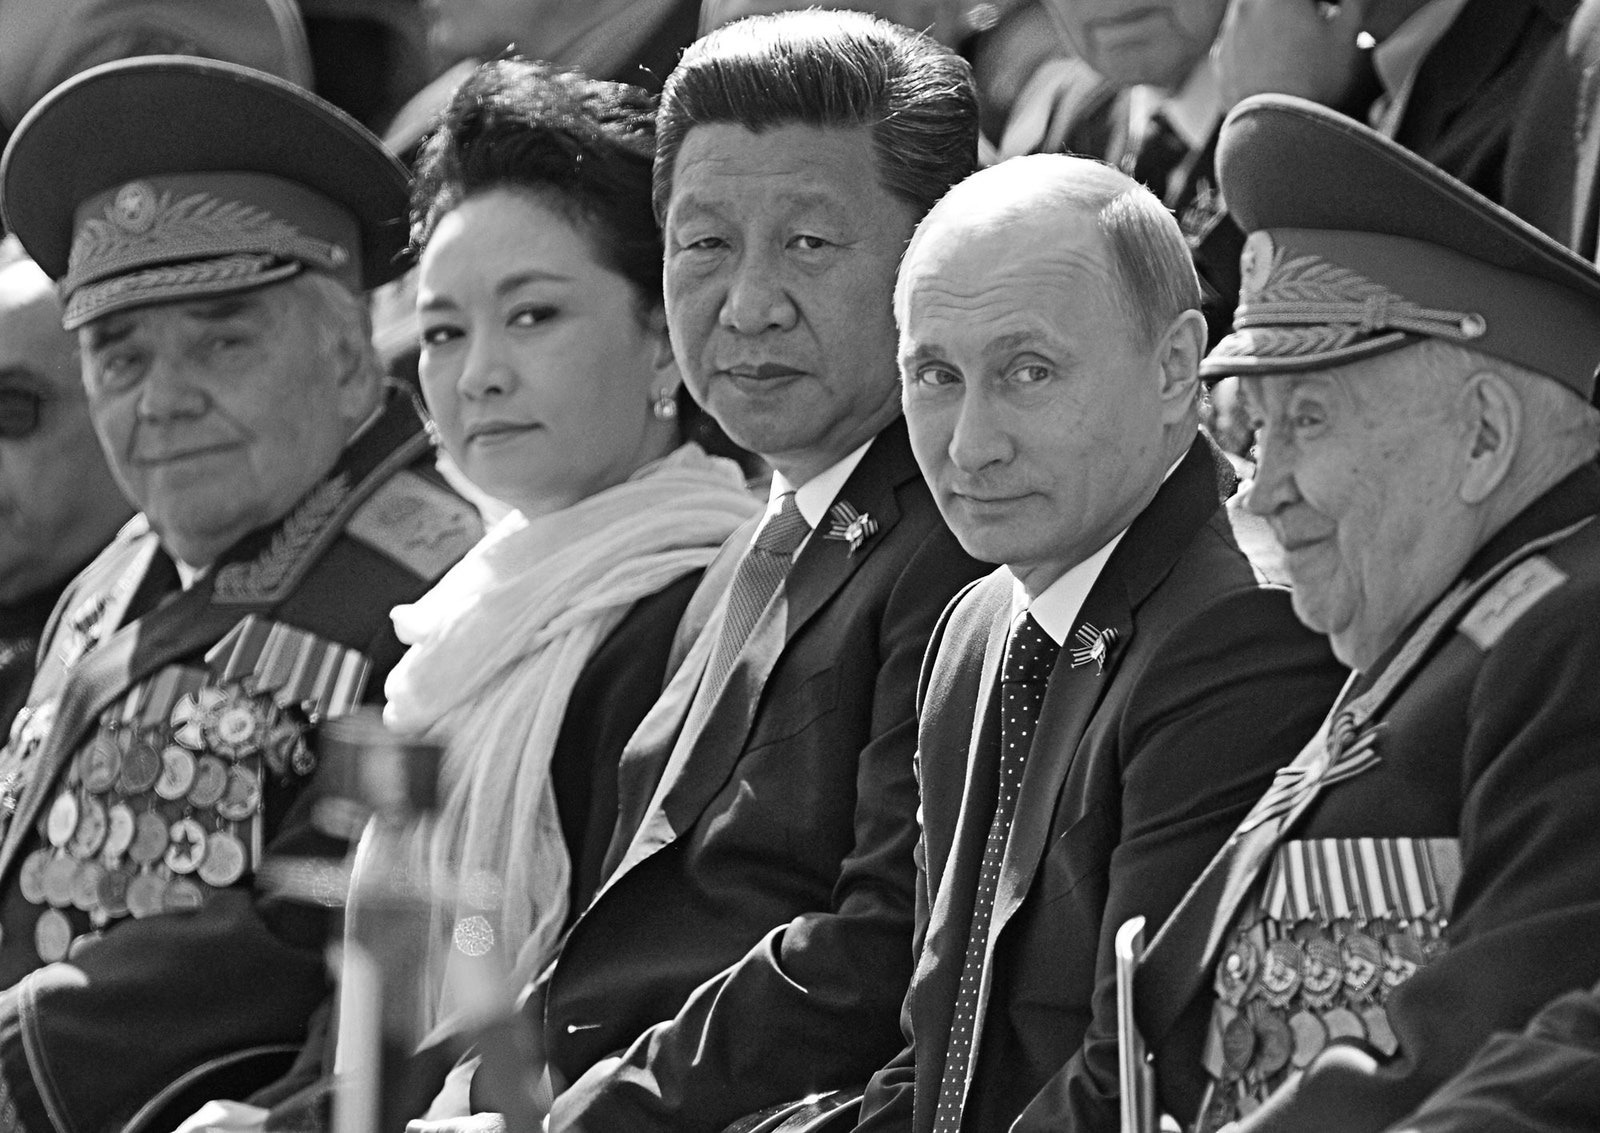 چرا ممکن است جنگ آینده بین روسیه و چین رخ دهد؟